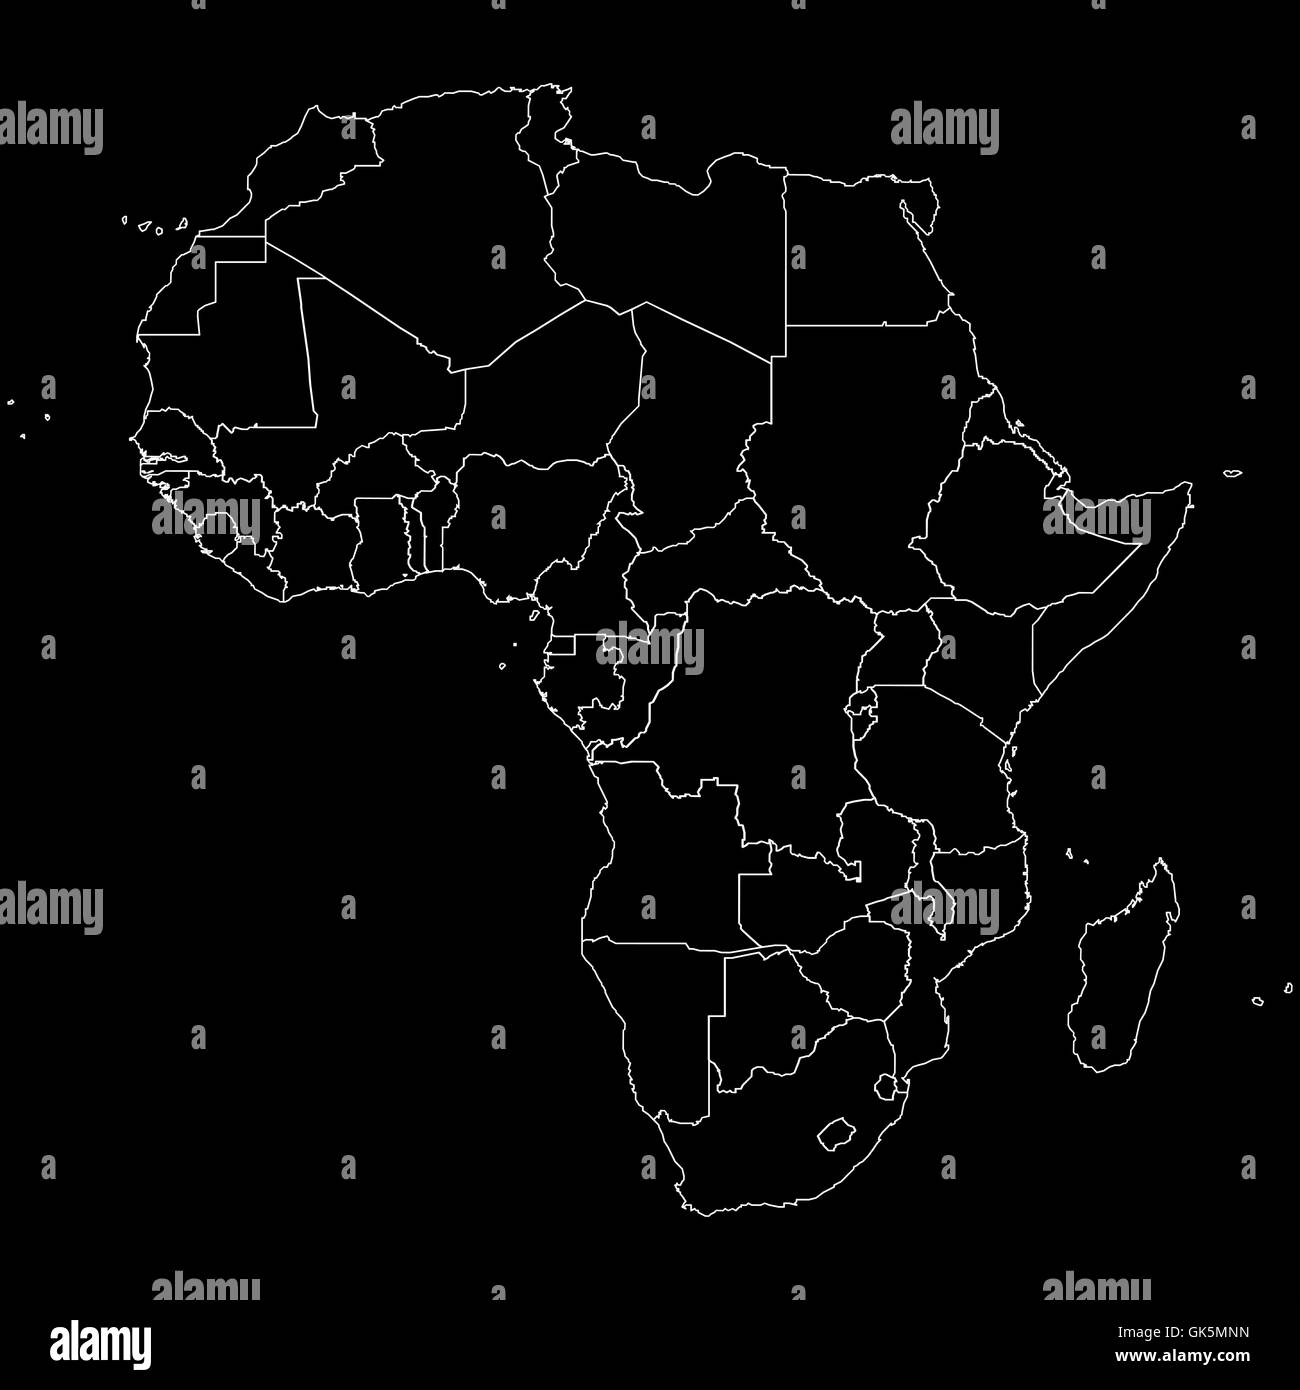 Outline Africa Map GK5MNN 